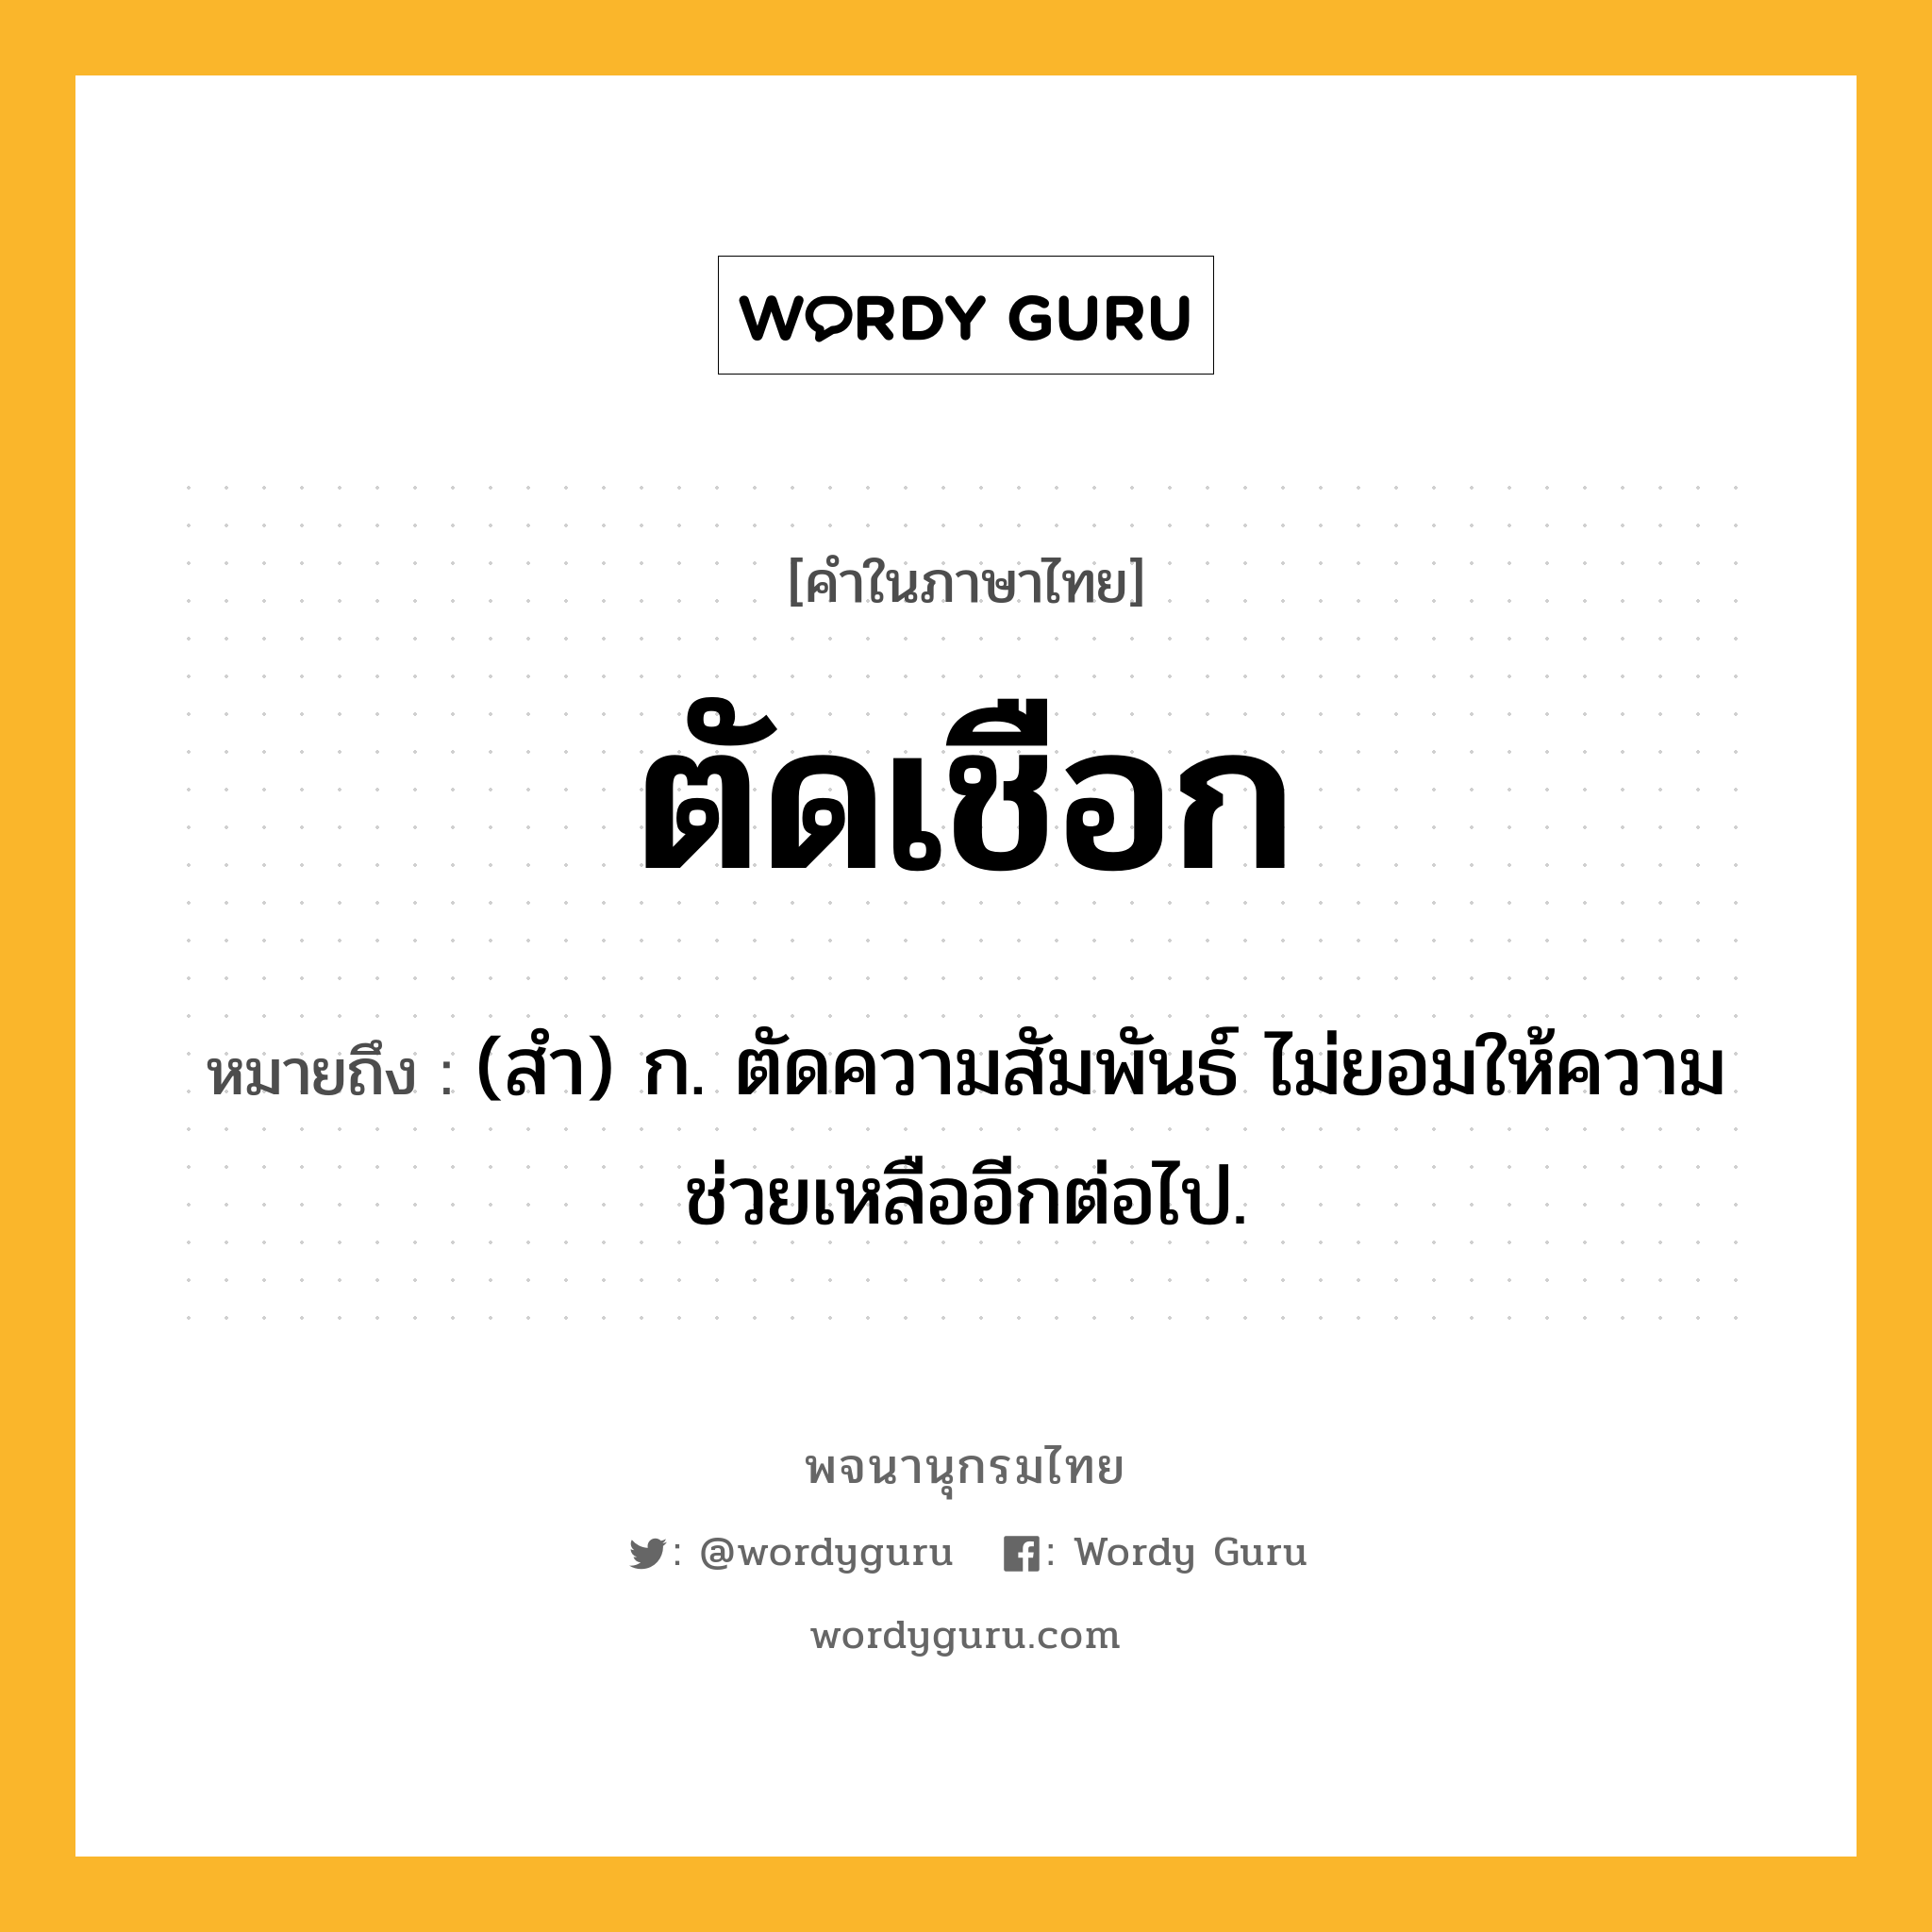 ตัดเชือก หมายถึงอะไร?, คำในภาษาไทย ตัดเชือก หมายถึง (สํา) ก. ตัดความสัมพันธ์ ไม่ยอมให้ความช่วยเหลืออีกต่อไป.